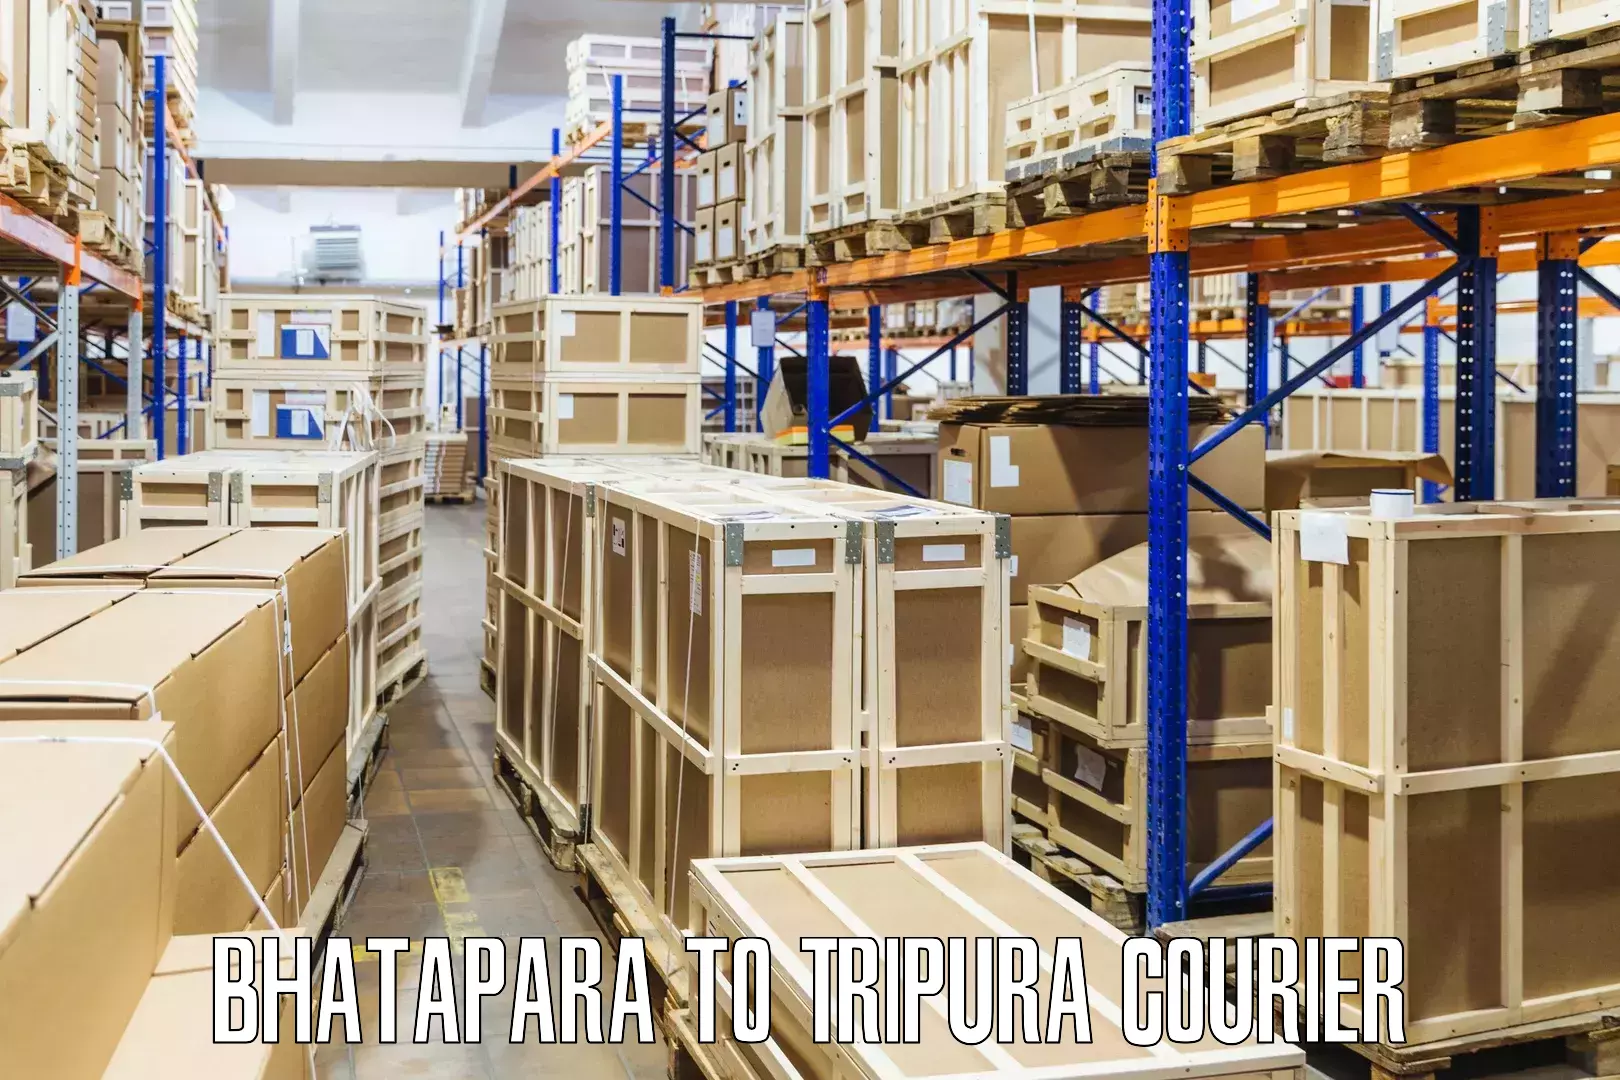 Multi-package shipping Bhatapara to Teliamura